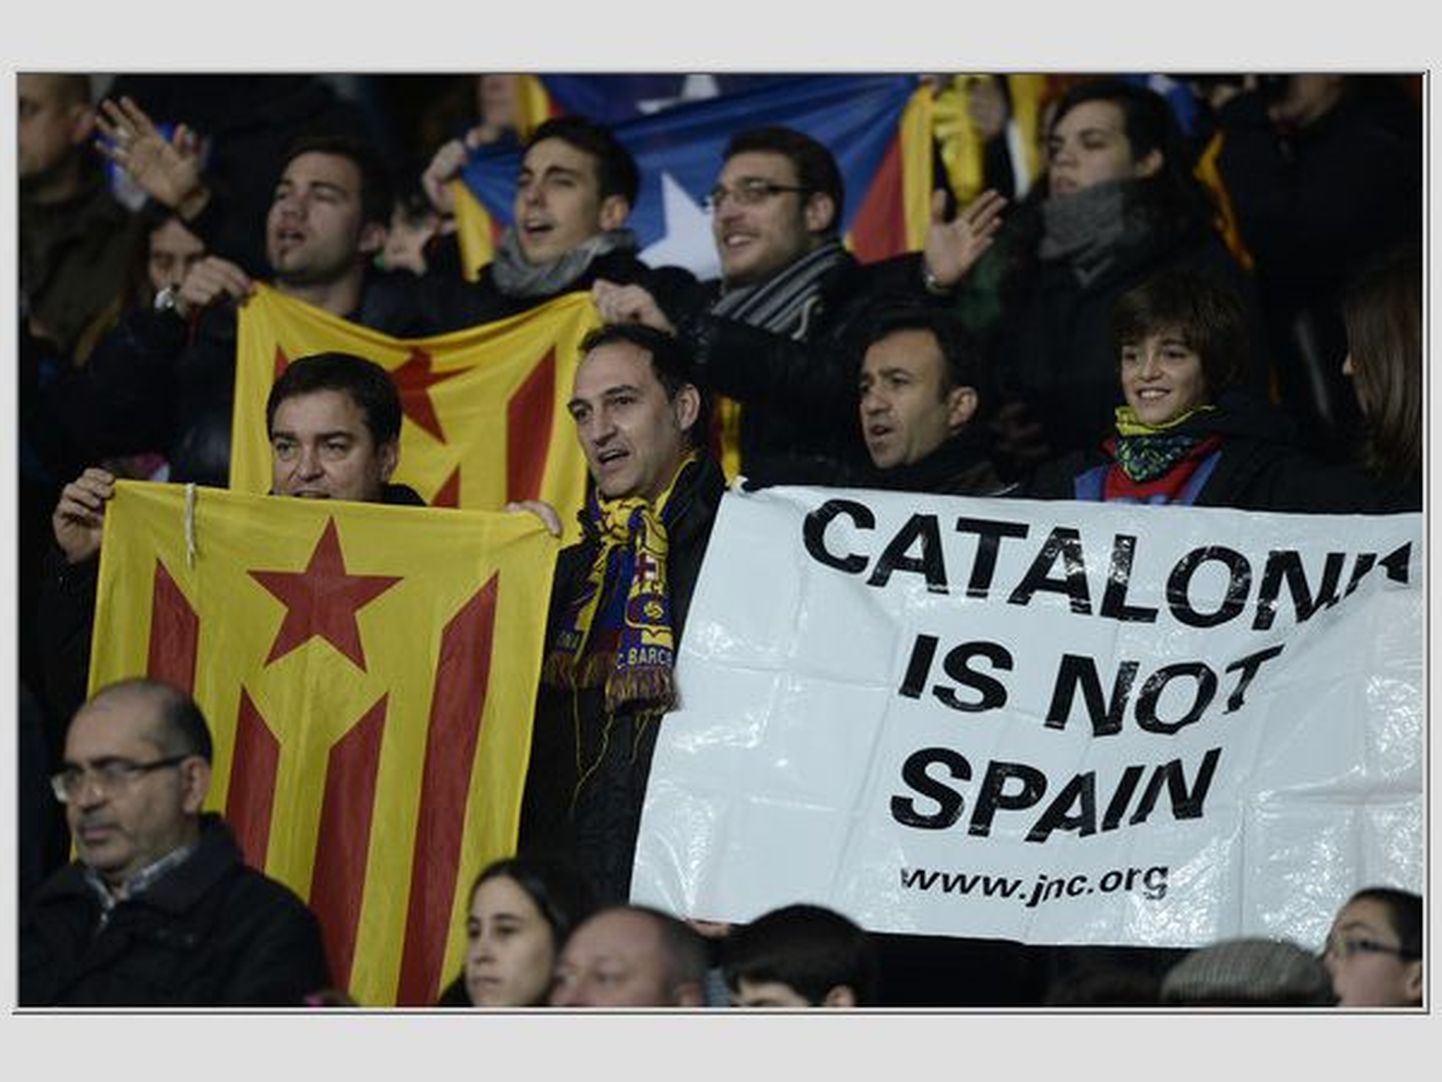 Iseseisvuse igatsejad Kataloonia ja Roheneemesaarte jalgpallimeeskondade sõpruskohtumisel Kataloonia pealinnas Barcelonas läinud aasta 30. detsembril.